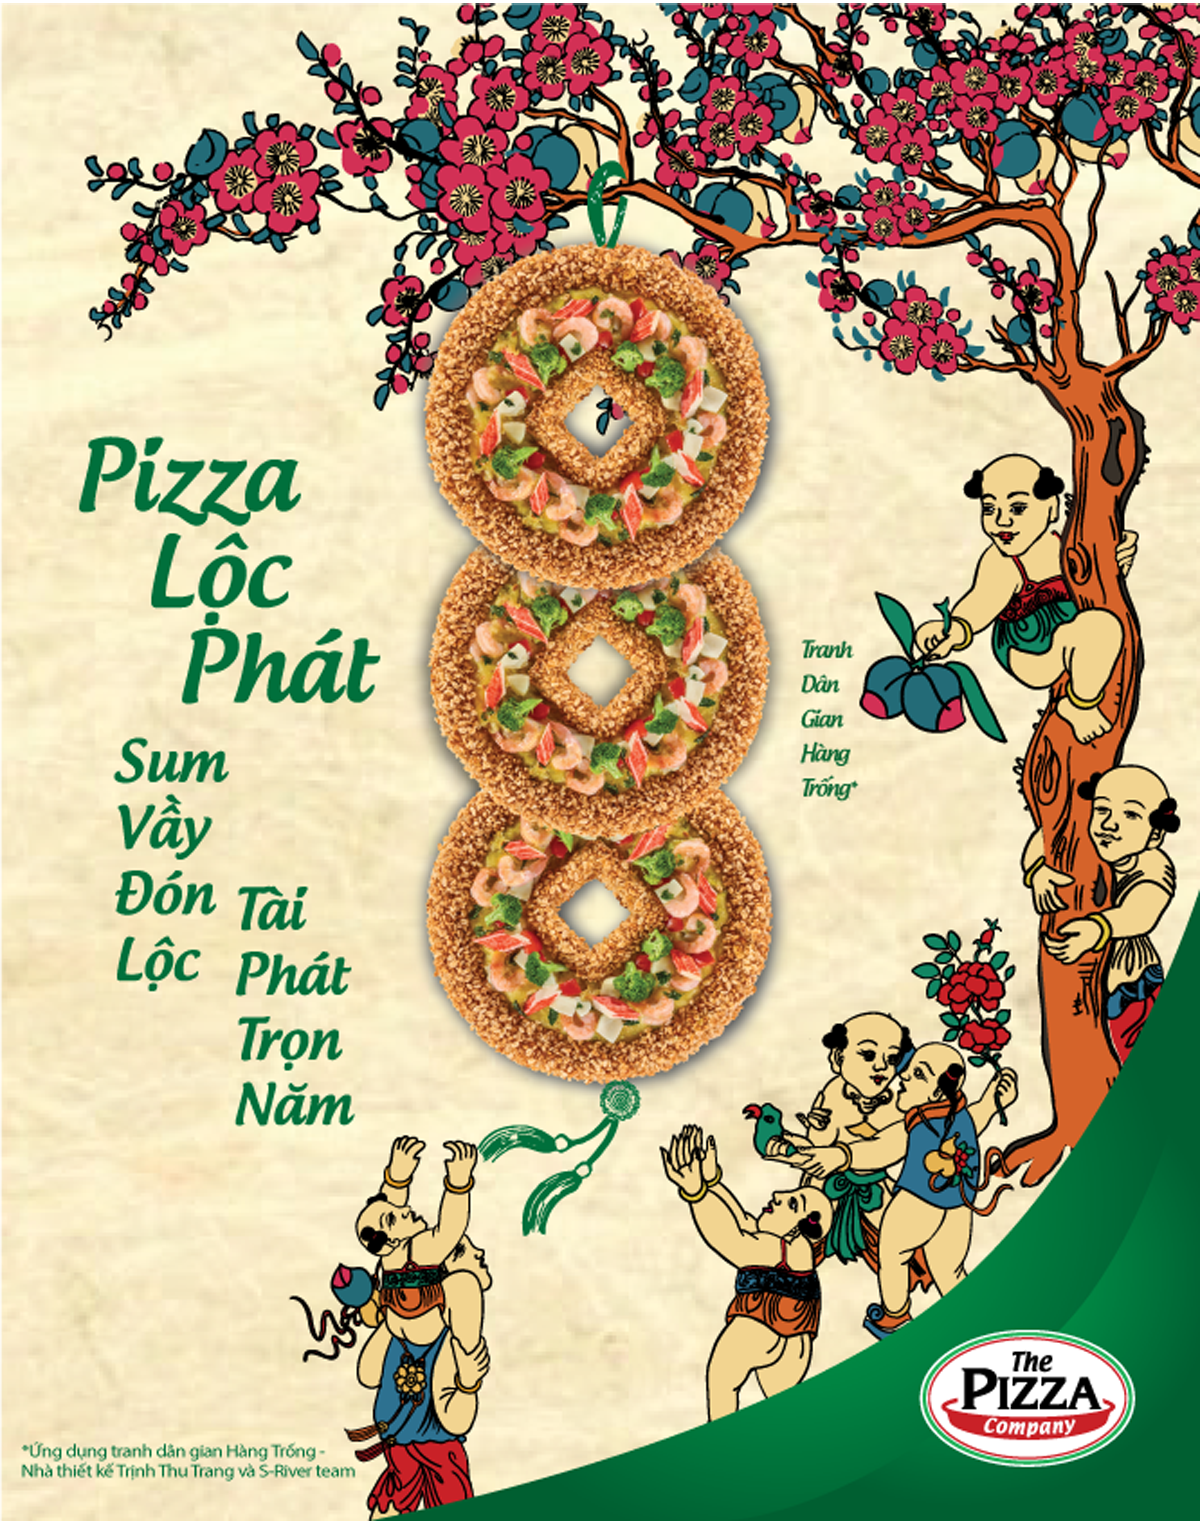 Tác phẩm thiết kế chủ đề Tam Tài của The Pizza Company và nhóm Họa Sắc Việt đã góp phần mang nét đẹp truyền thống vào ngày tết thời hiện đại và trao gửi nhiều lời chúc tốt đẹp trong đầu năm mới